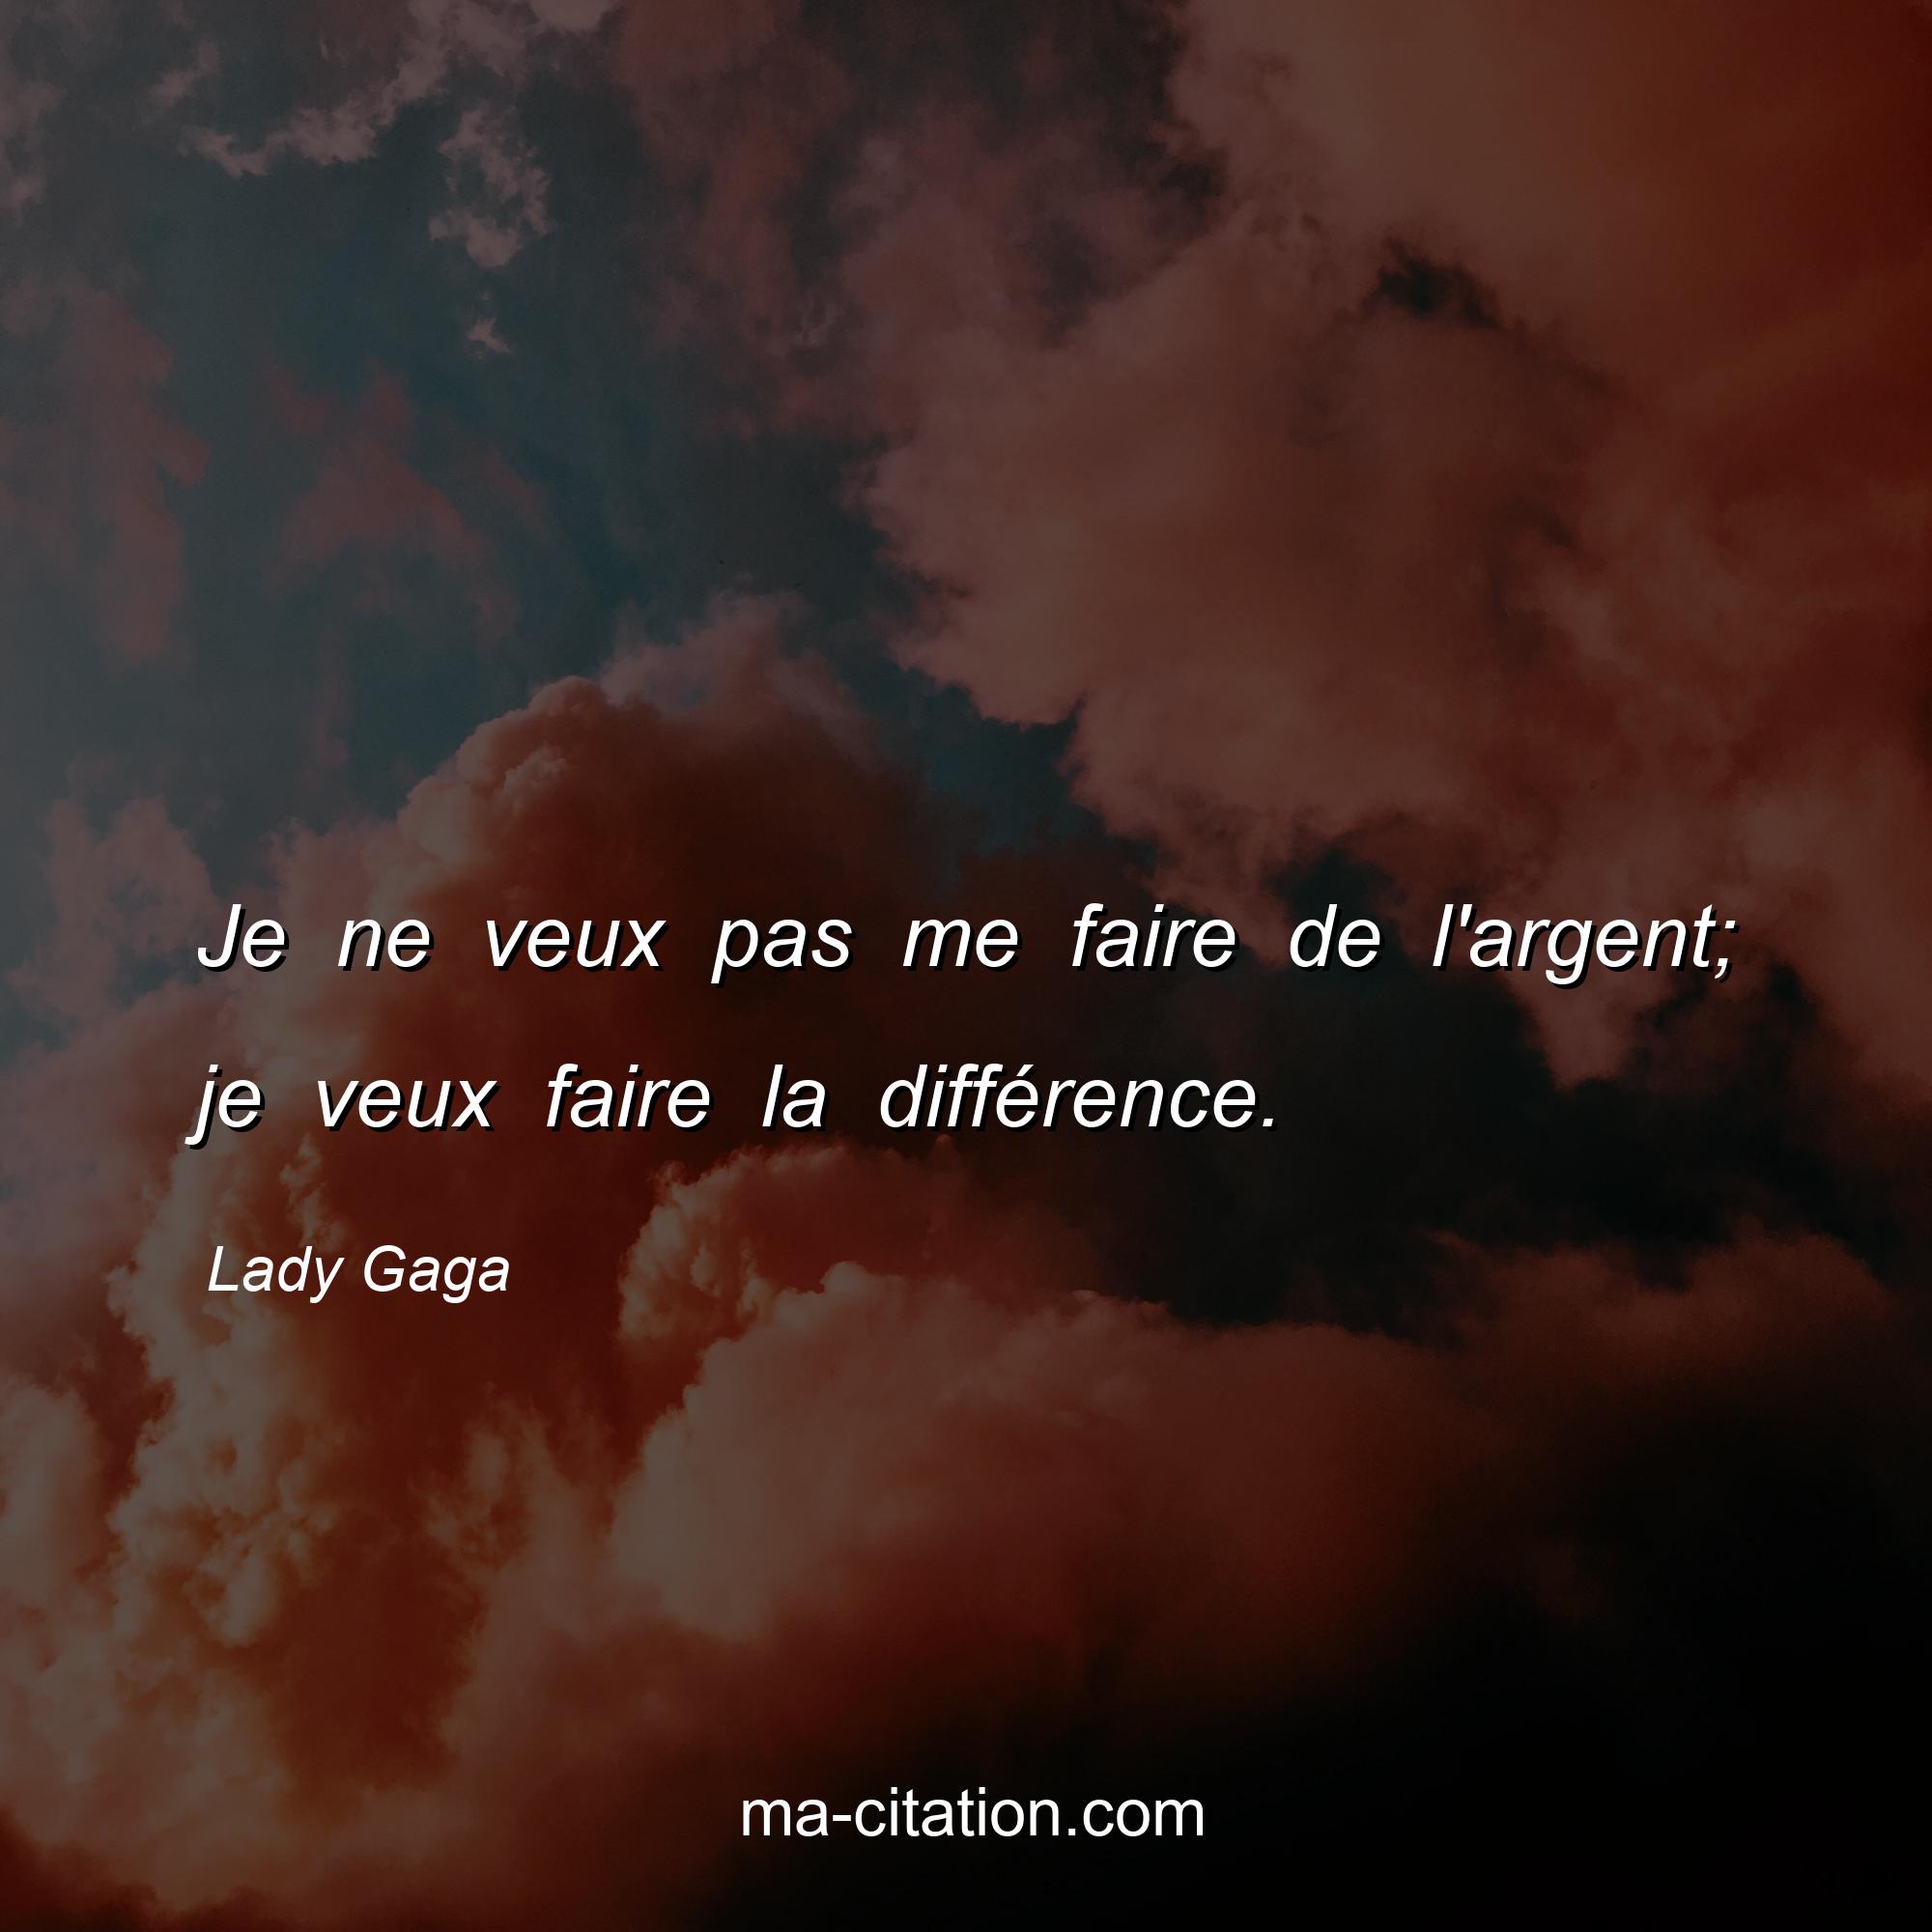 Lady Gaga : Je ne veux pas me faire de l'argent; je veux faire la différence.